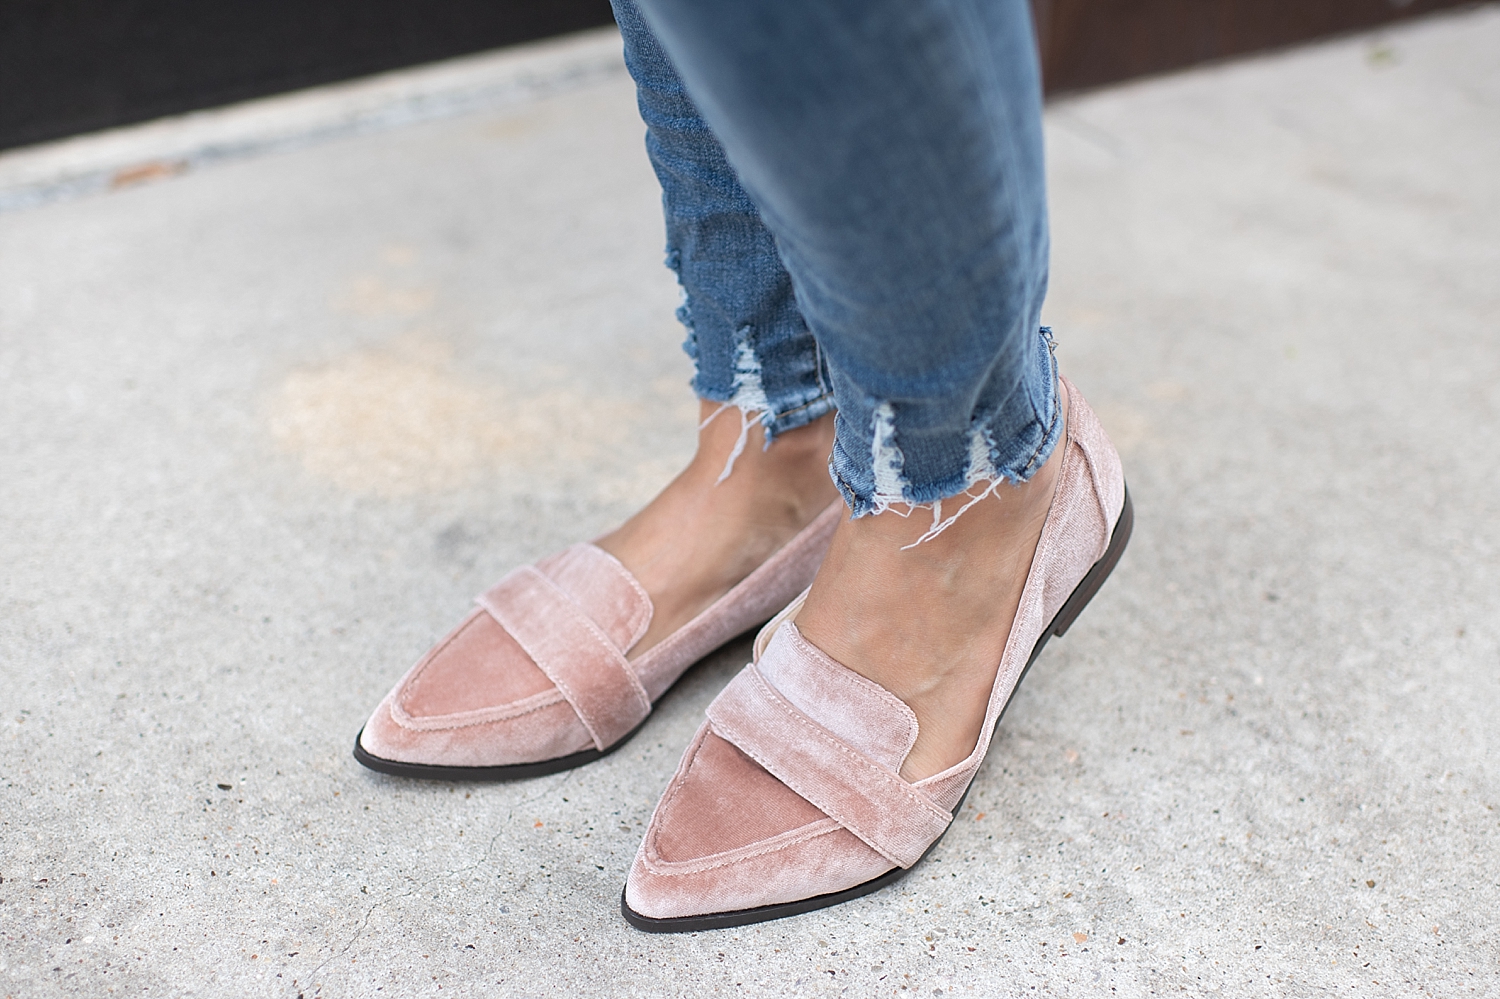 Sole Society velvet loafers styled by popular Houston fashion blogger, Fancy Ashley